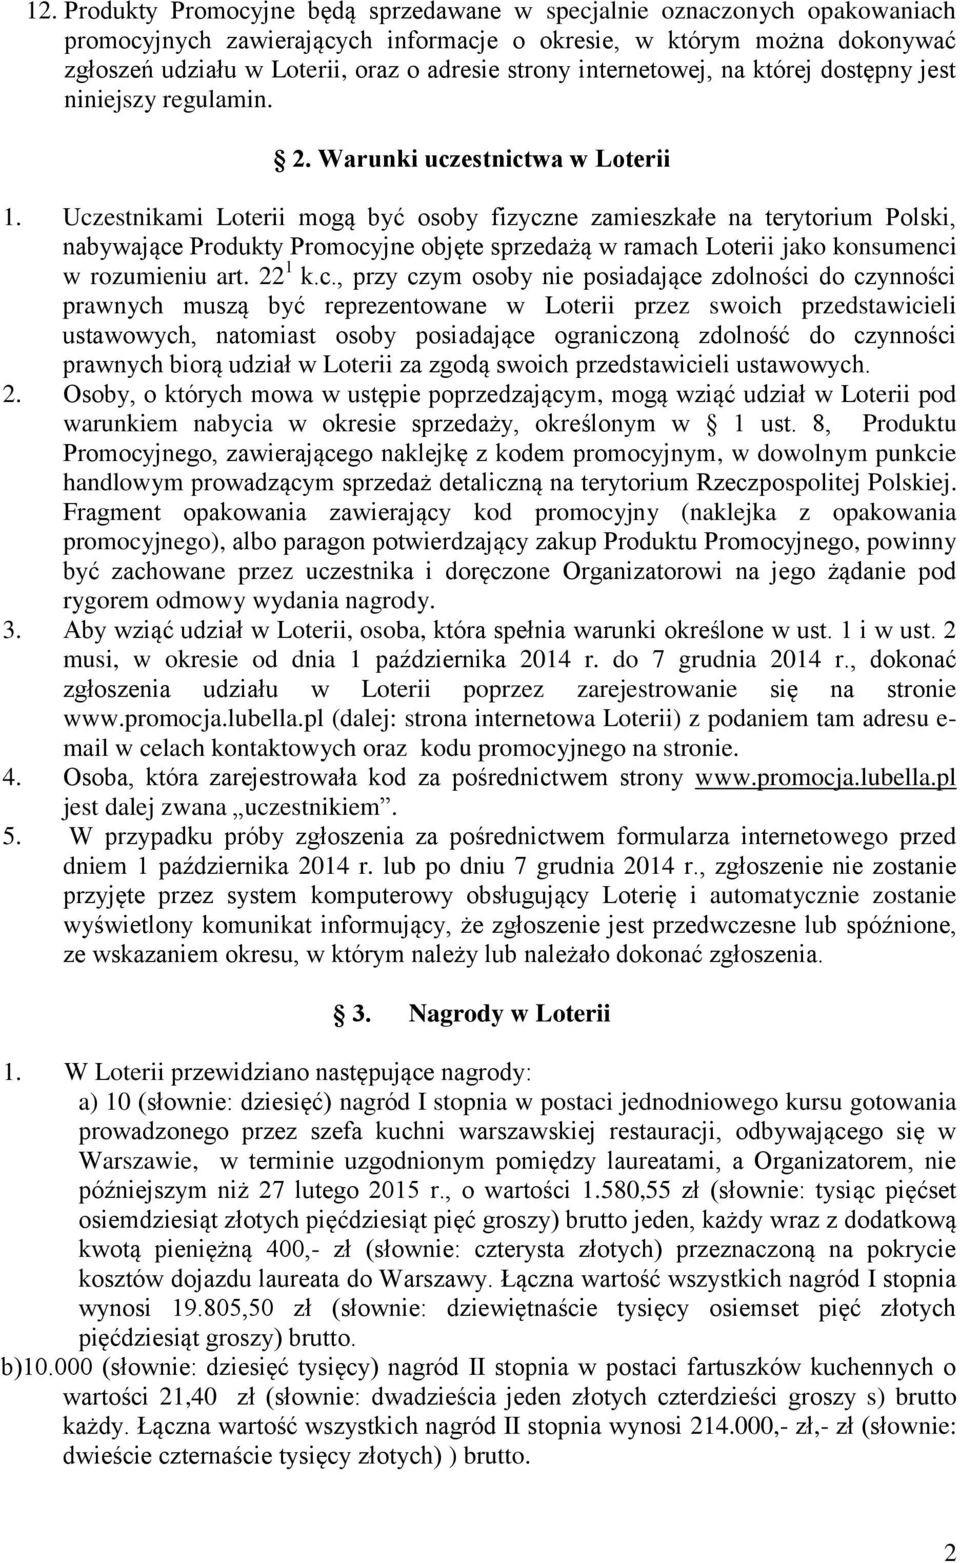 Uczestnikami Loterii mogą być osoby fizyczne zamieszkałe na terytorium Polski, nabywające Produkty Promocyjne objęte sprzedażą w ramach Loterii jako konsumenci w rozumieniu art. 22 1 k.c., przy czym